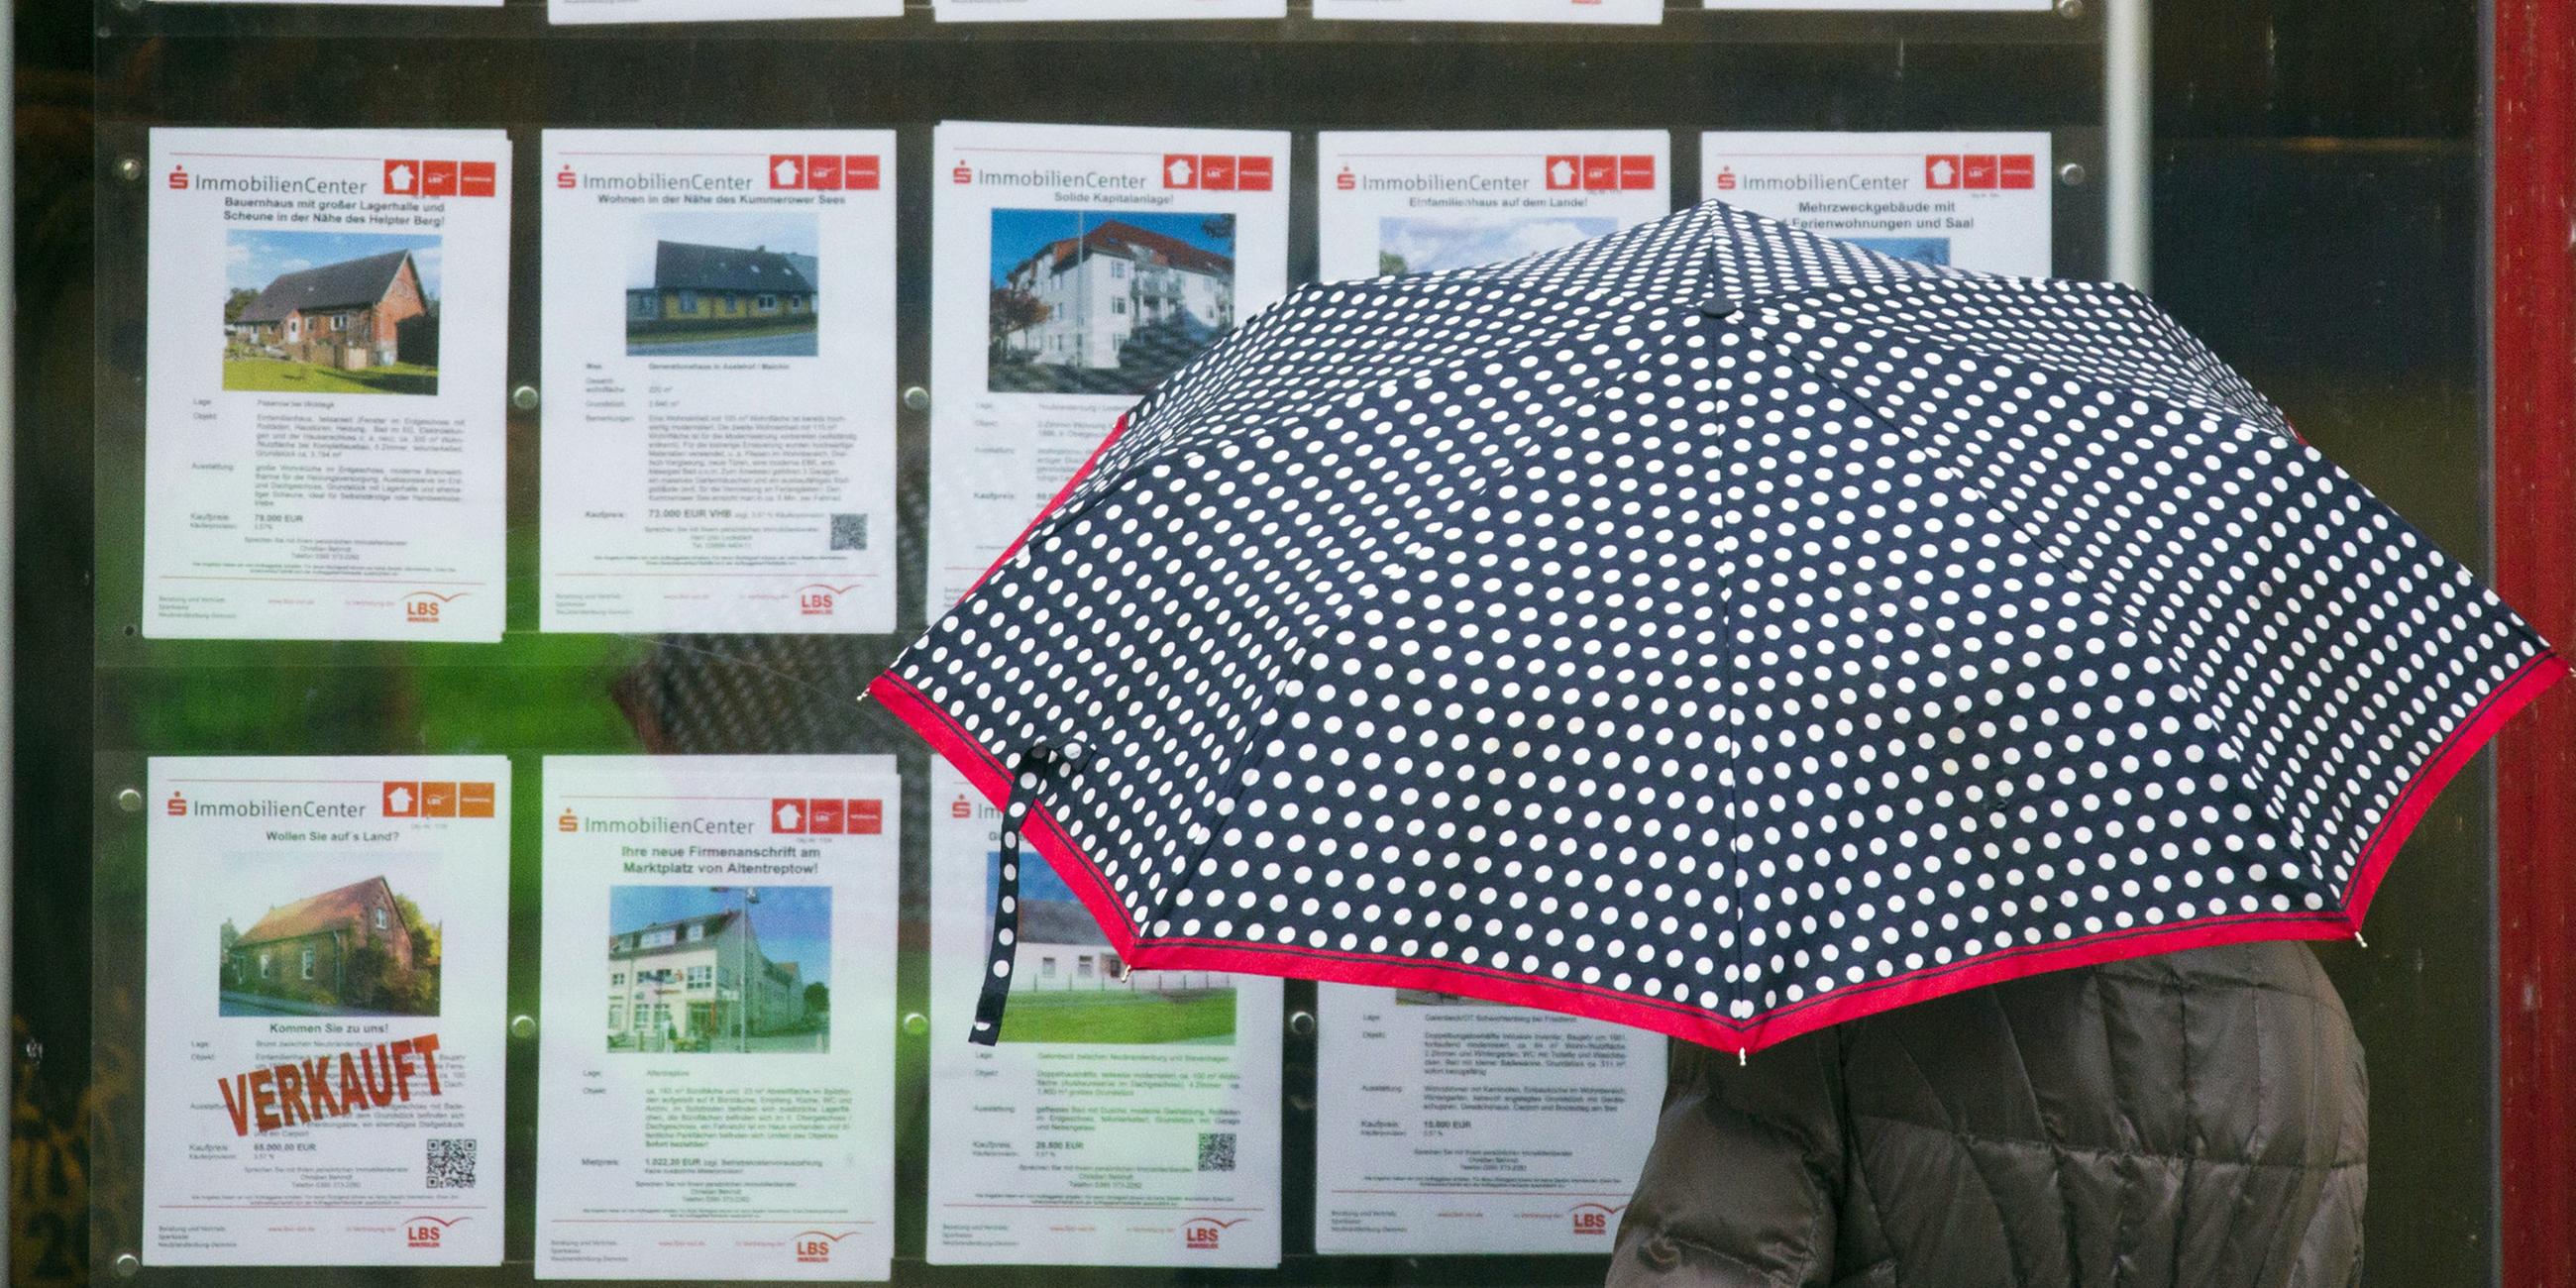 Archiv: Eine Frau mit Regenschirm steht vor einem Schaufenster mit Ammobilienangeboten.